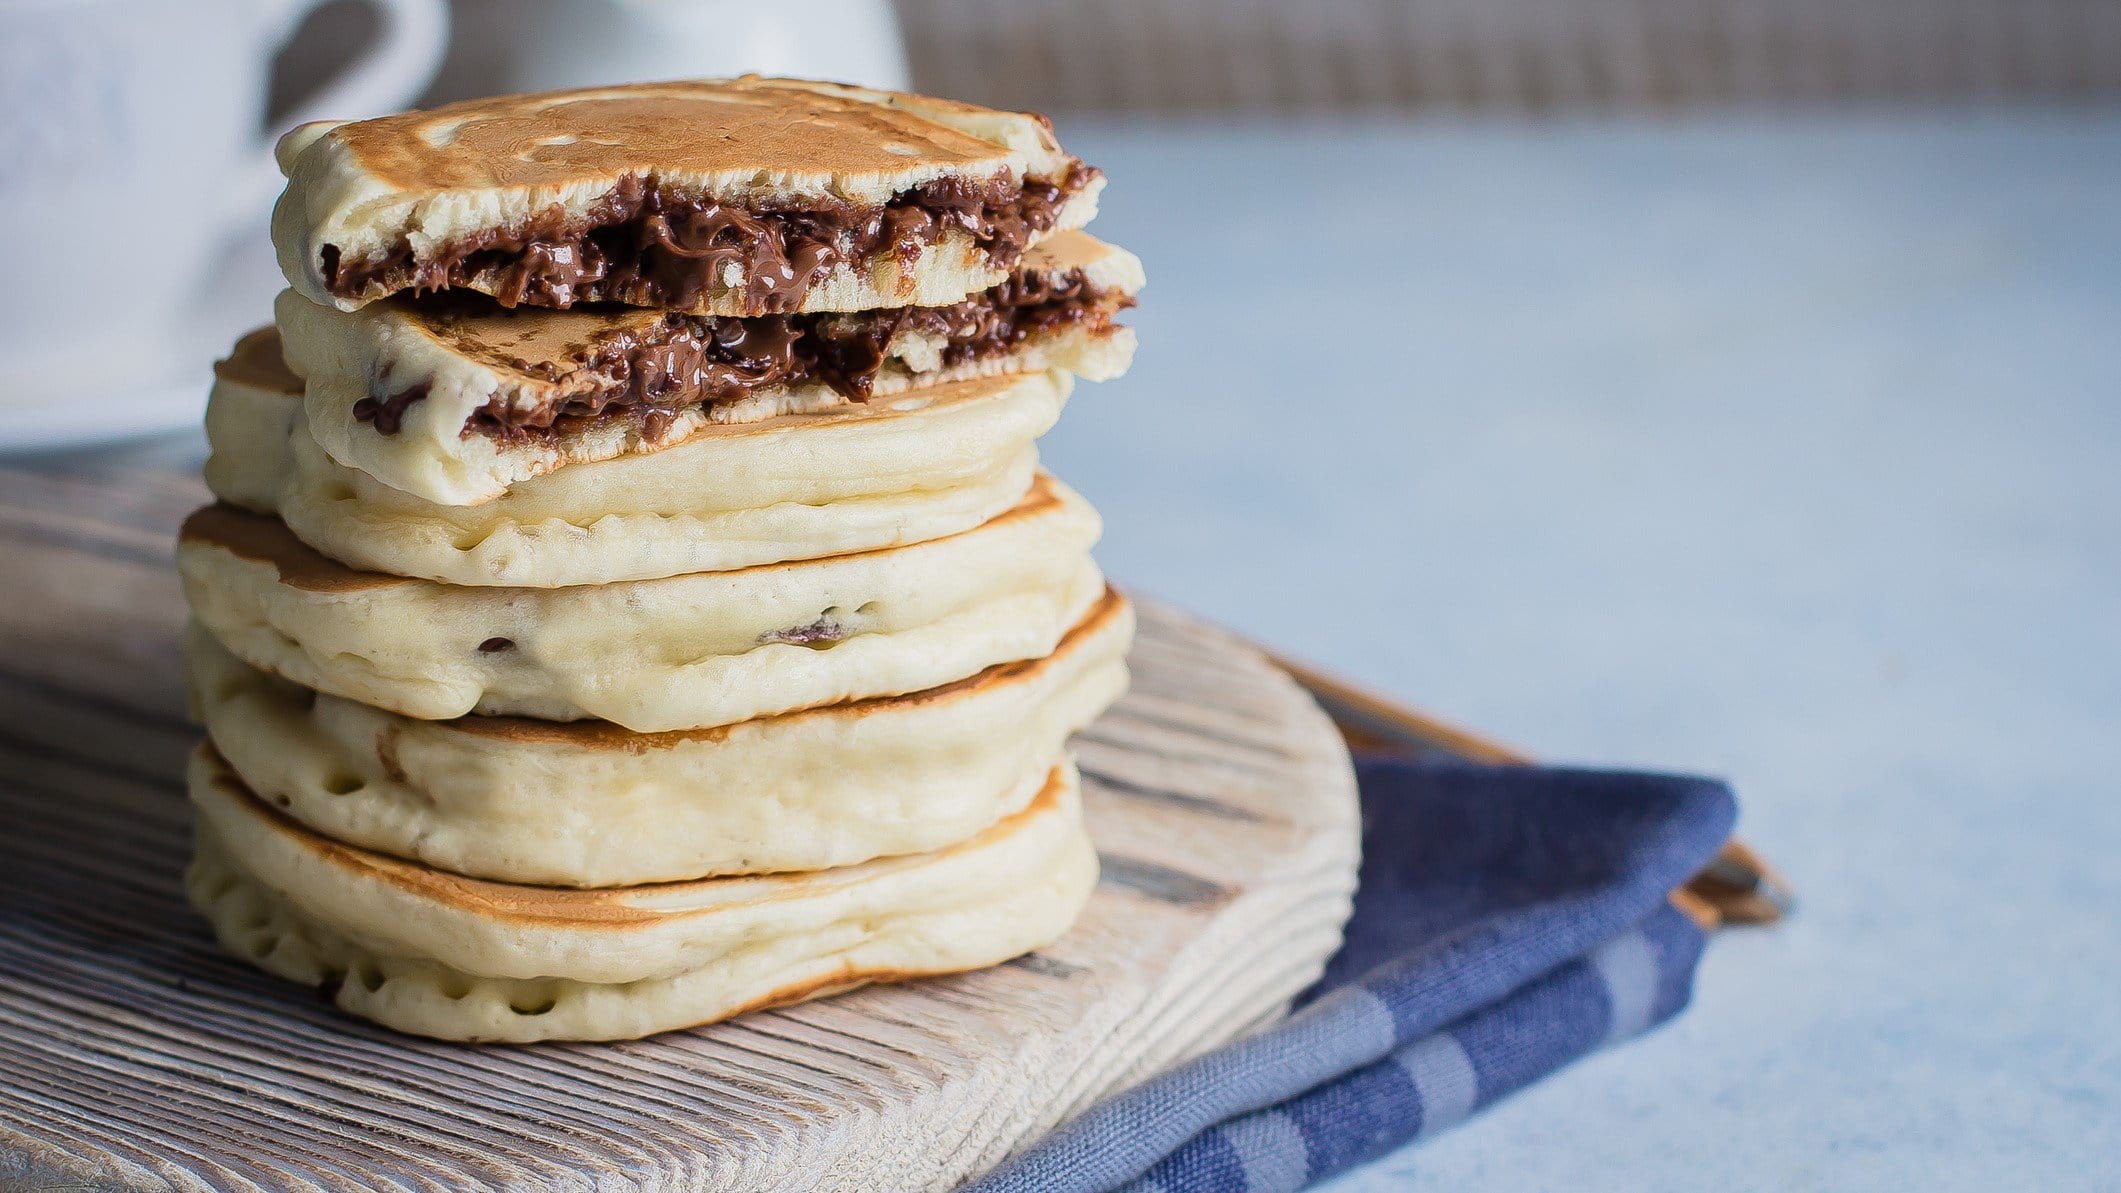 Gefüllte Pancakes mit Nutella gestapelt auf Holzbrett auf Küchentuch. Im Hintergrund eine Tasse. Frontalansicht.